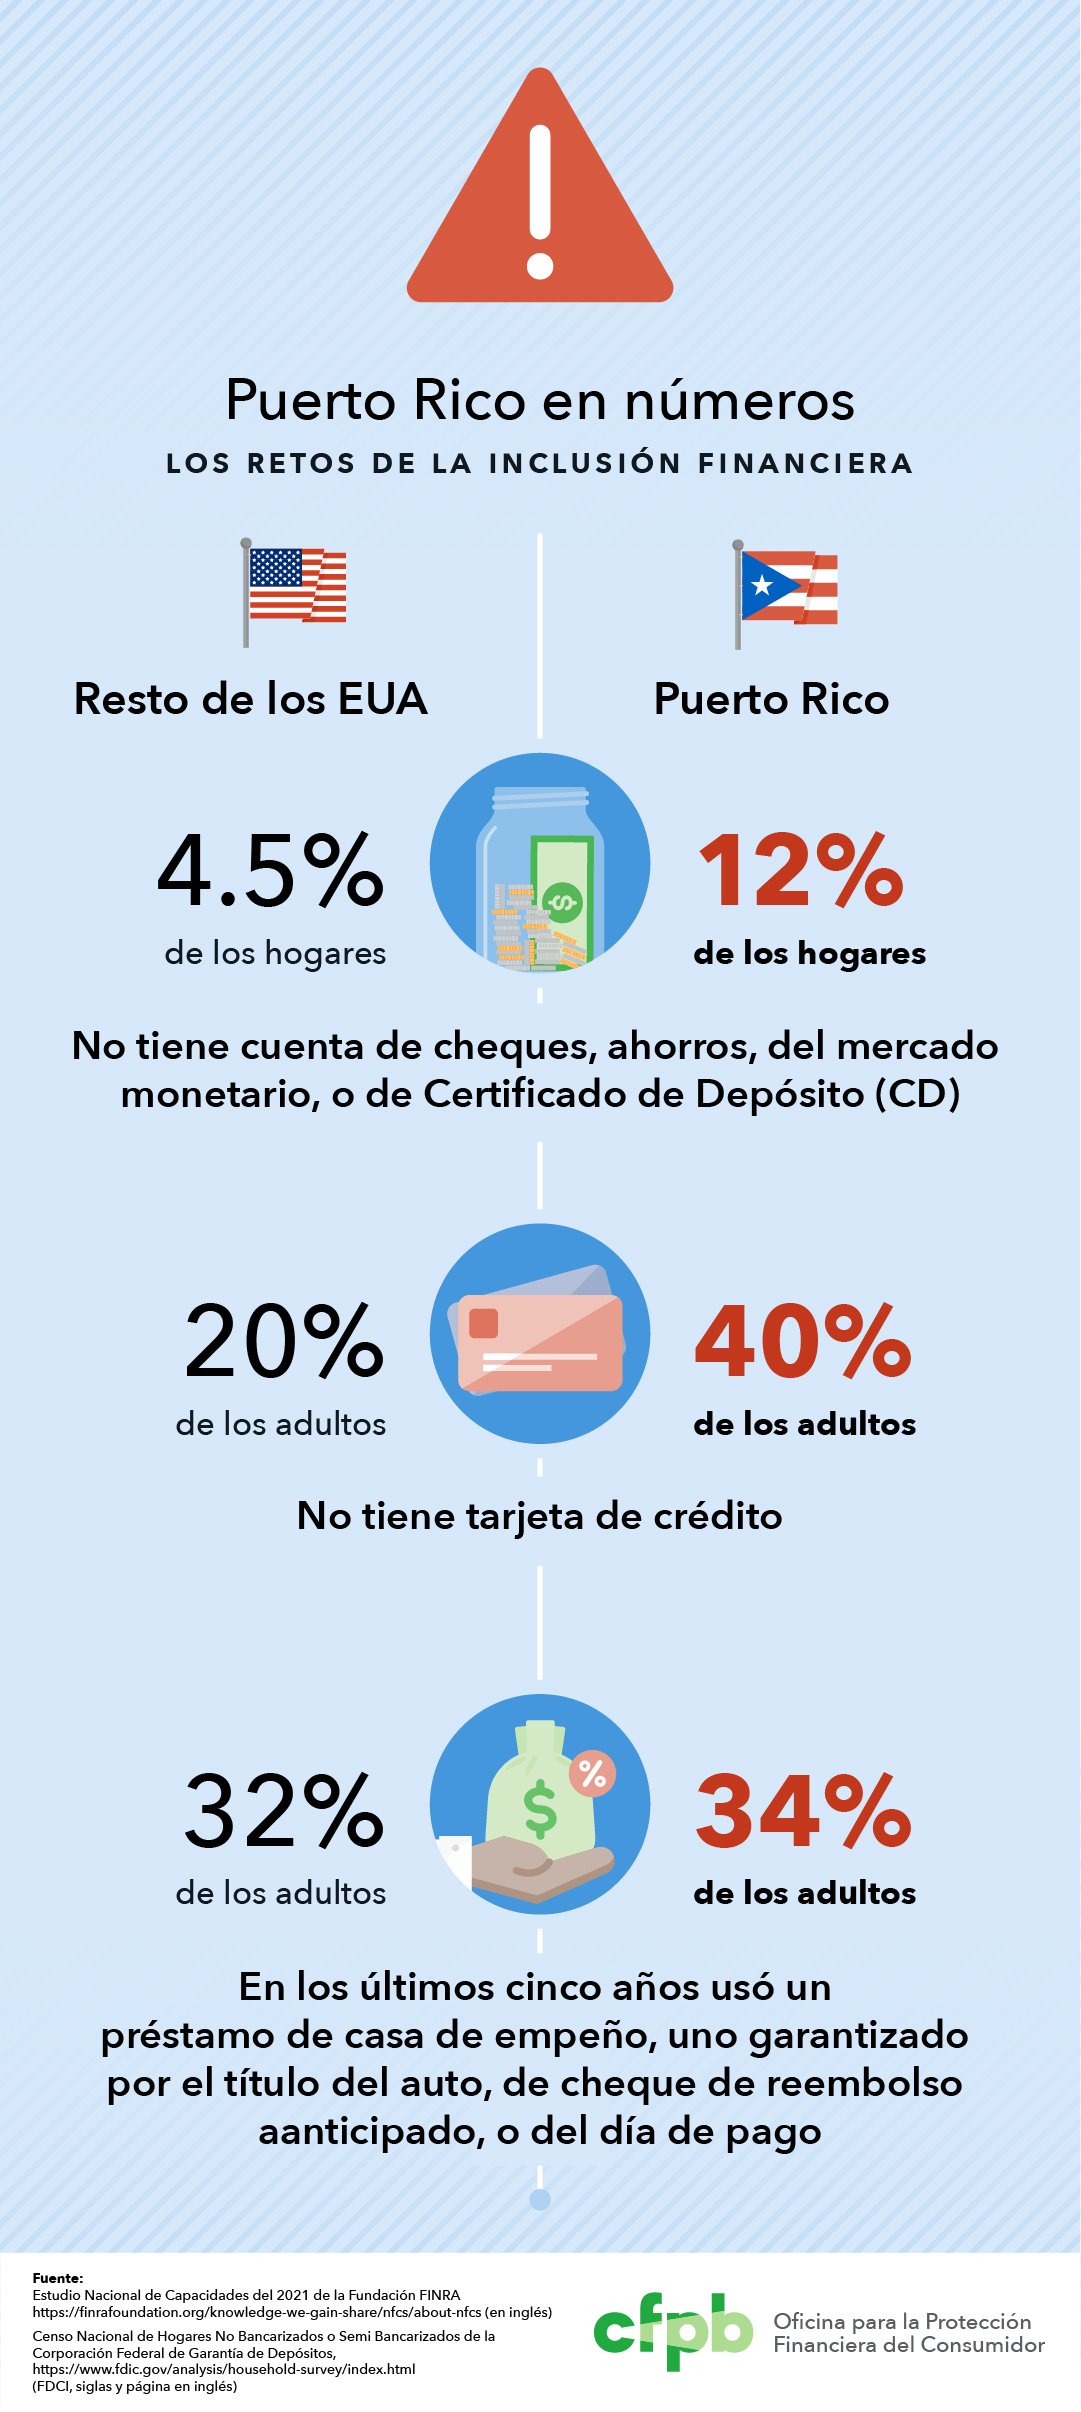 Puerto Rico en números: Los retos a la inclusión financiera. La proporción de adultos que no tiene cuenta de cheques, de ahorros, del mercado monetario, o de Certificado de Depósito (CD), es del 12% en Puerto Rico y del 4.5% en el resto del país. La proporción de adultos que no tiene tarjeta de crédito es del 40% en Puerto Rico, y del 20% en el resto del país. La proporción de adultos que, en los últimos cinco años, usó un préstamo de casa de empeño, uno garantizado por el título del auto, de cheque de reembolso anticipado, o del día de pago, es del 34% en Puerto Rico y del 32% en el resto del país.